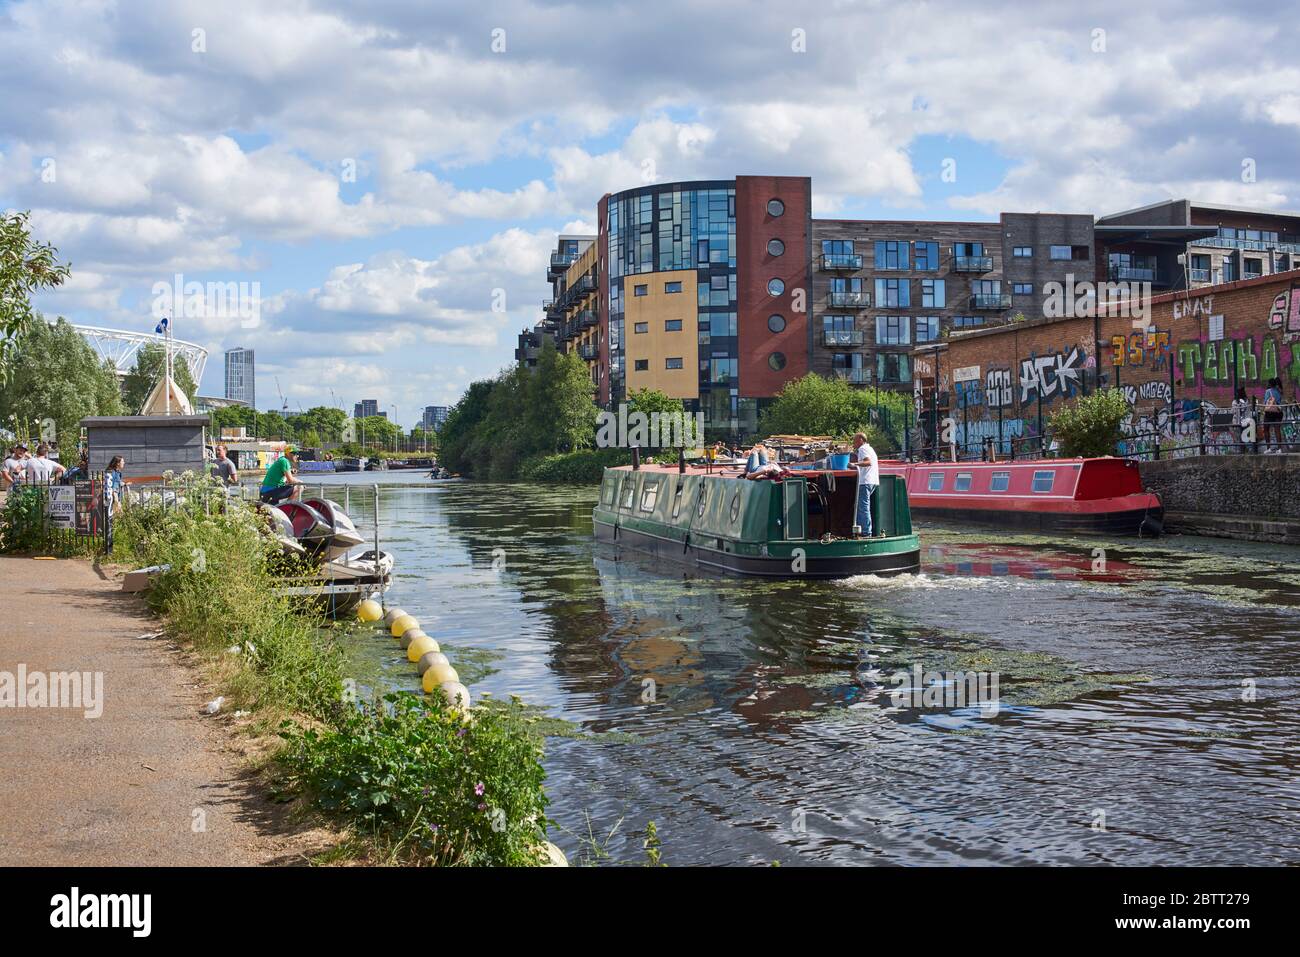 El río Lea en Hackney Wick, Londres del este del Reino Unido, con barcos estrechos y nuevos edificios de apartamentos Foto de stock